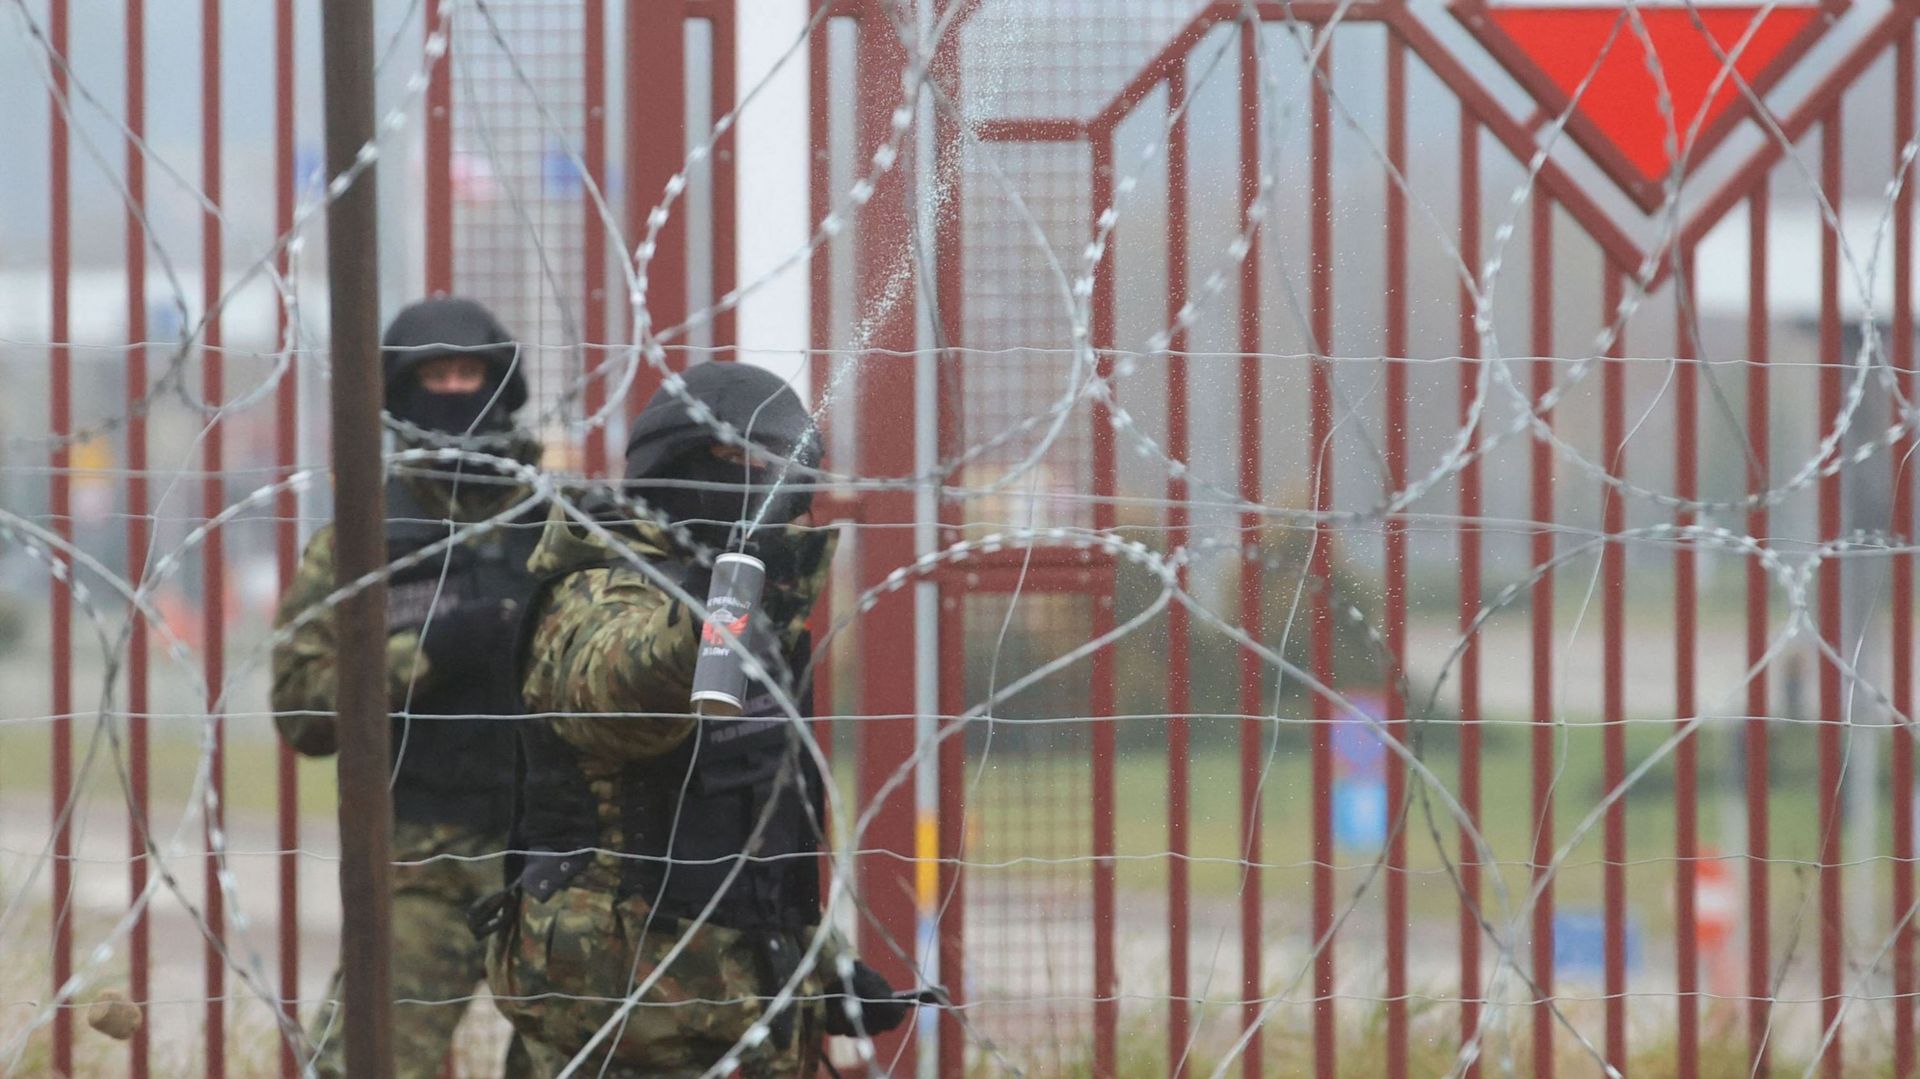 Tensions à la frontière entre la Pologne et la Biélorussie : MSF quitte la région. Photo d'illustration